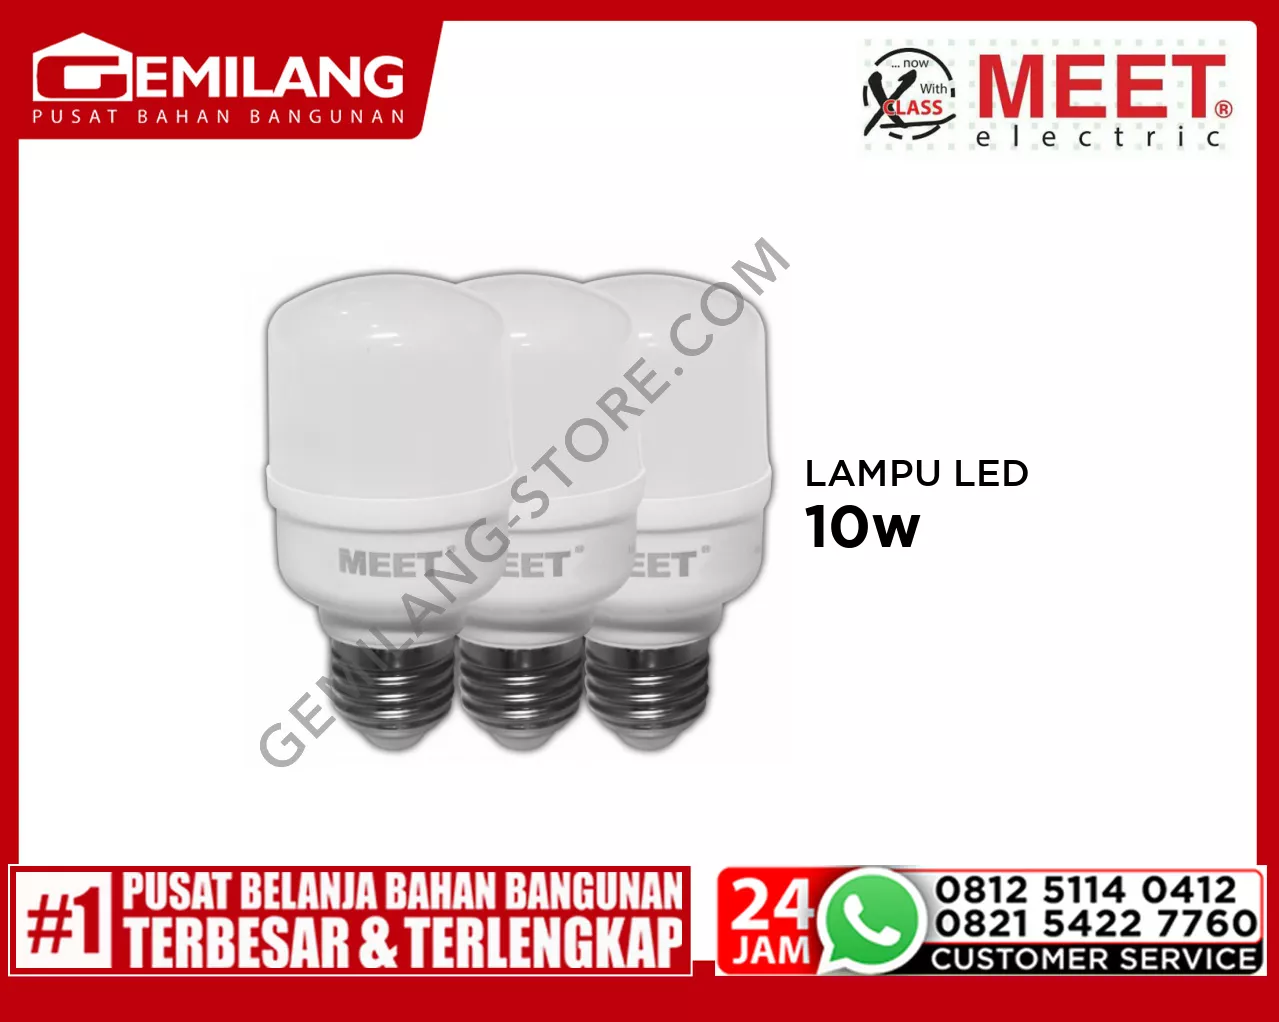 MEET LAMPU LED CAPSULE (2+1) 10w